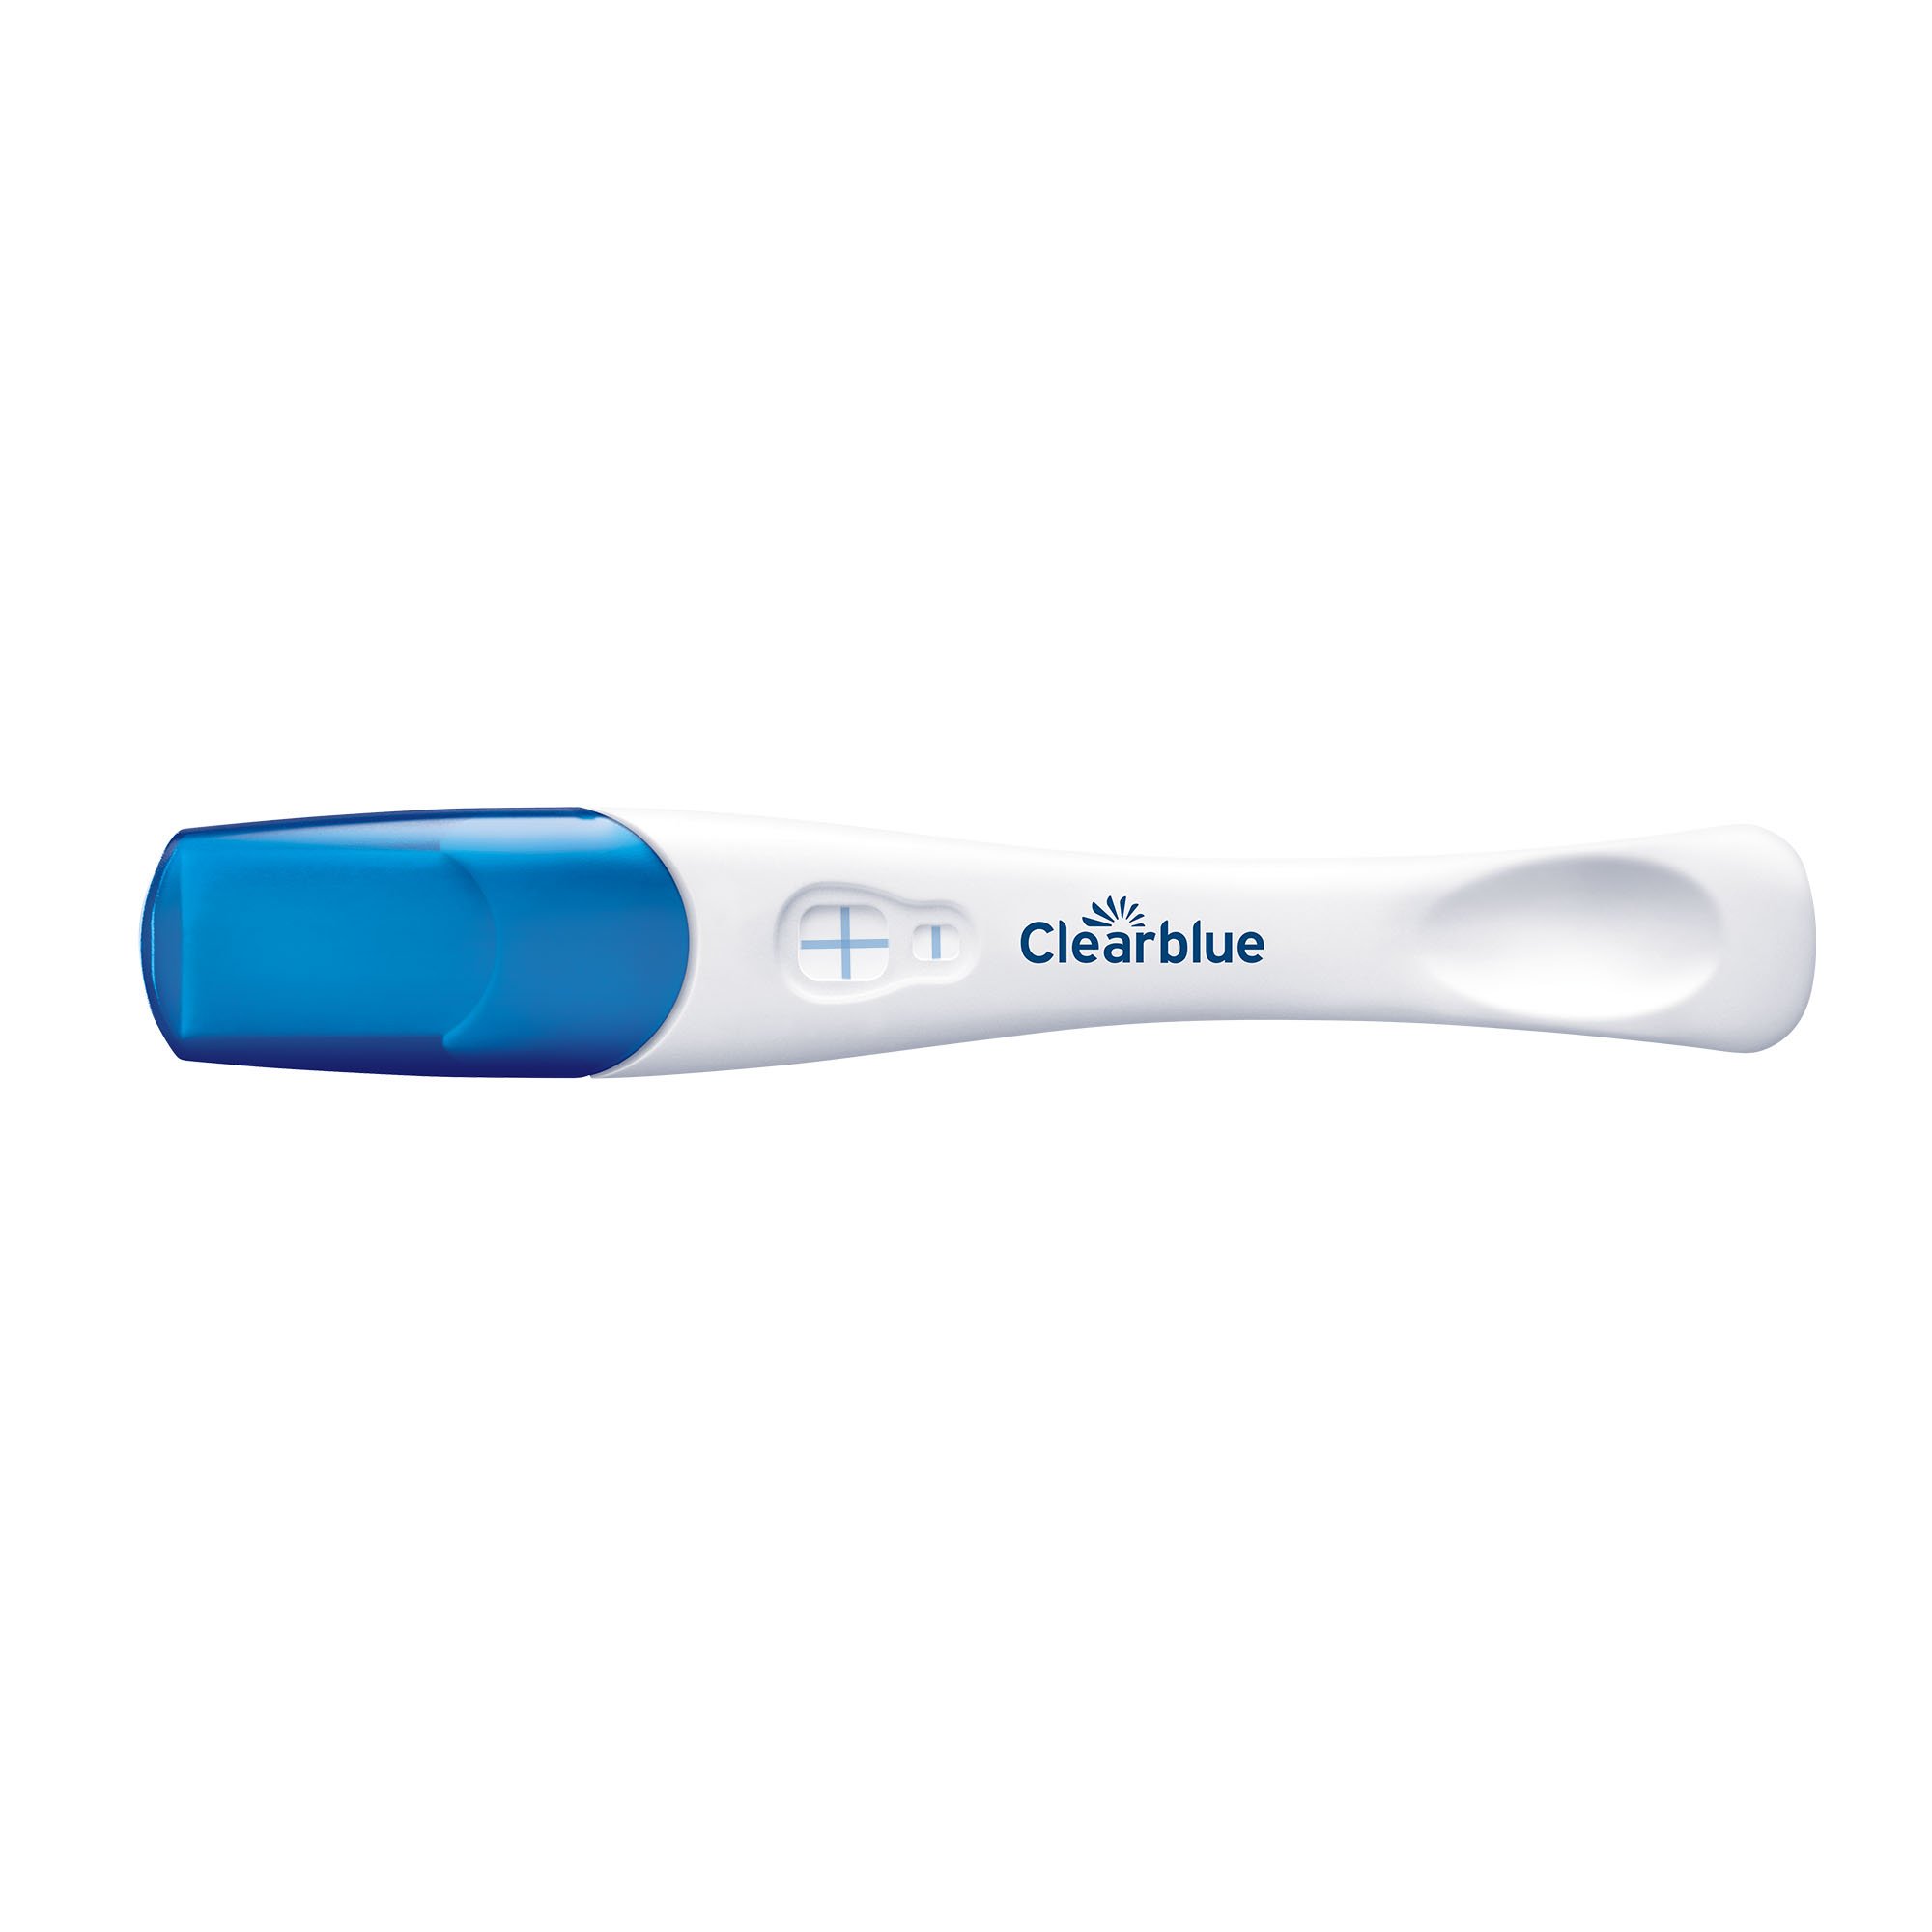 Цифровой тест на беременность клеар блю. Тест на беременность Clearblue. Clearblue тест. Тест Clearblue Plus на беременность. Clean Blue тест на беременность.